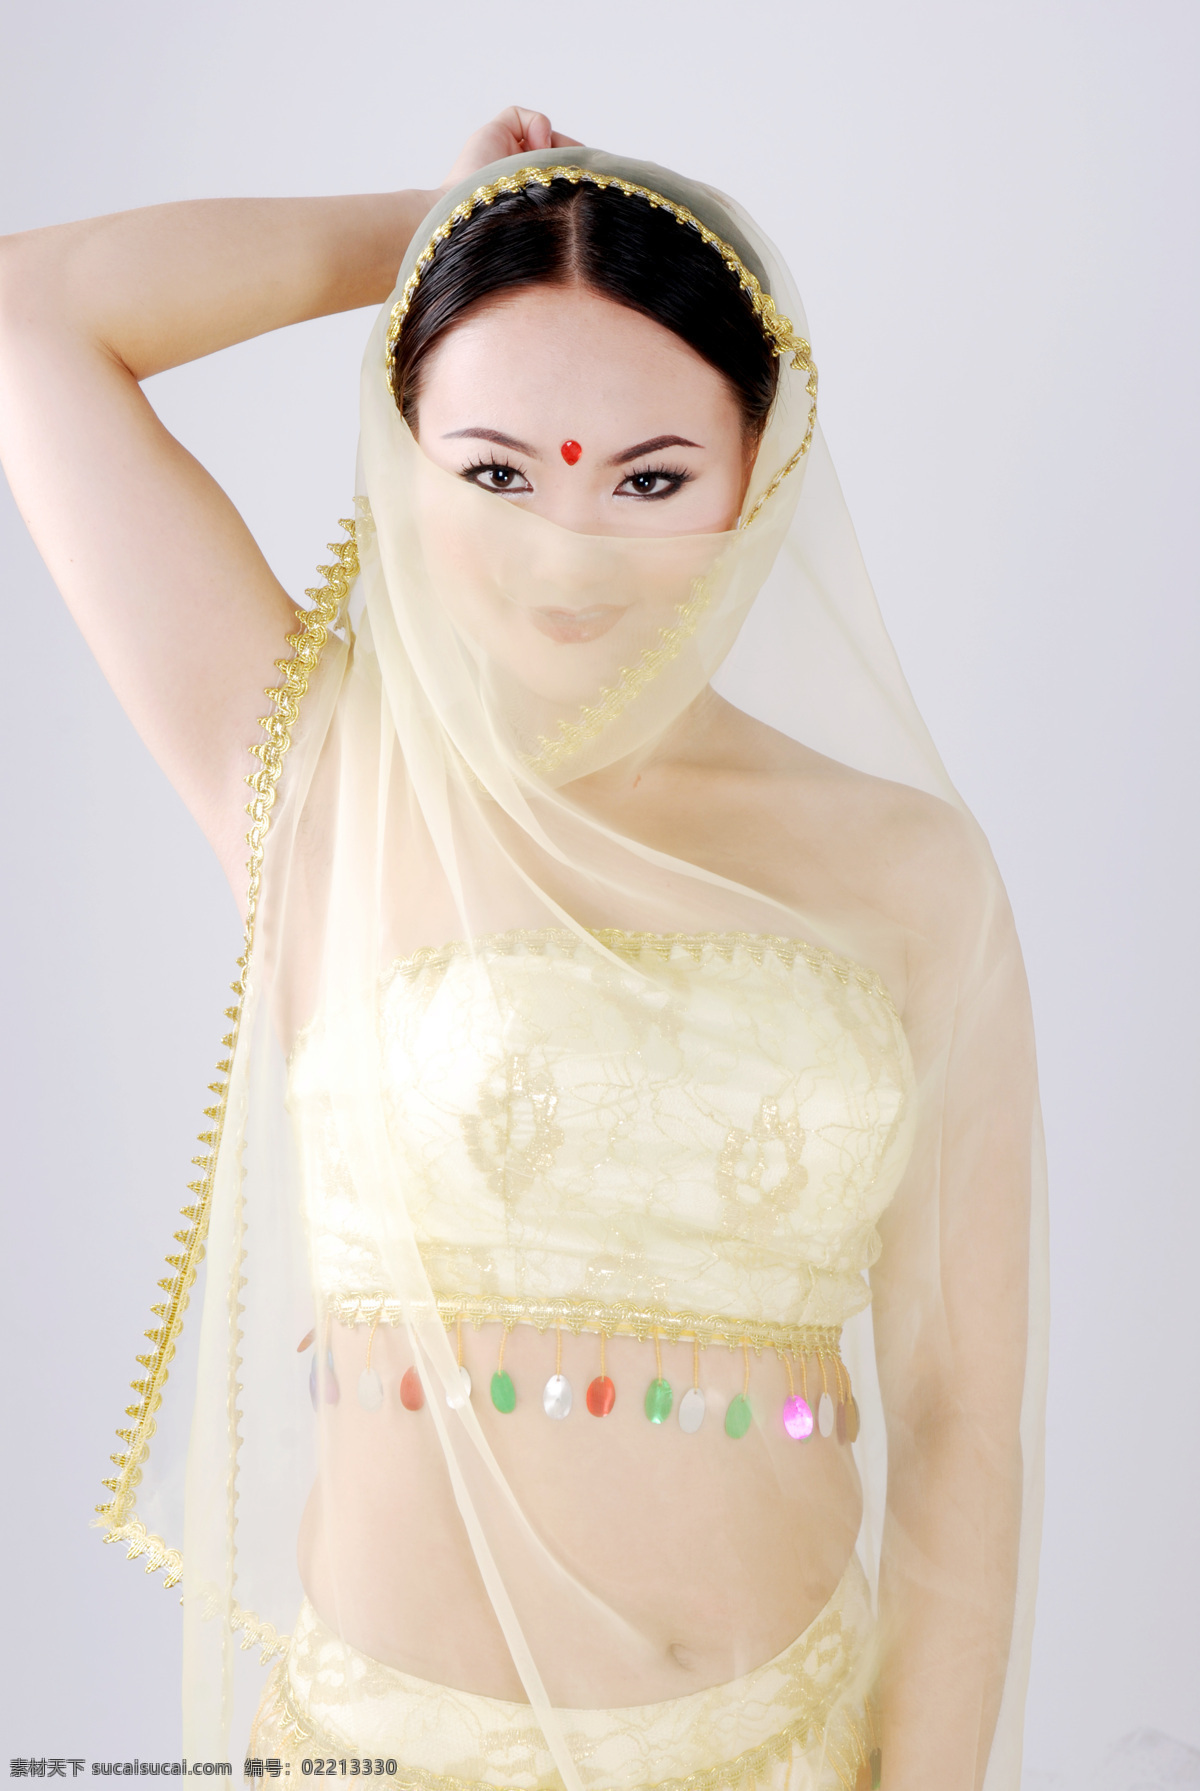 美女图片 美女 人物摄影 人物图库 印度美女 舞蹈家 肚皮舞美女 蒙面美女 psd源文件